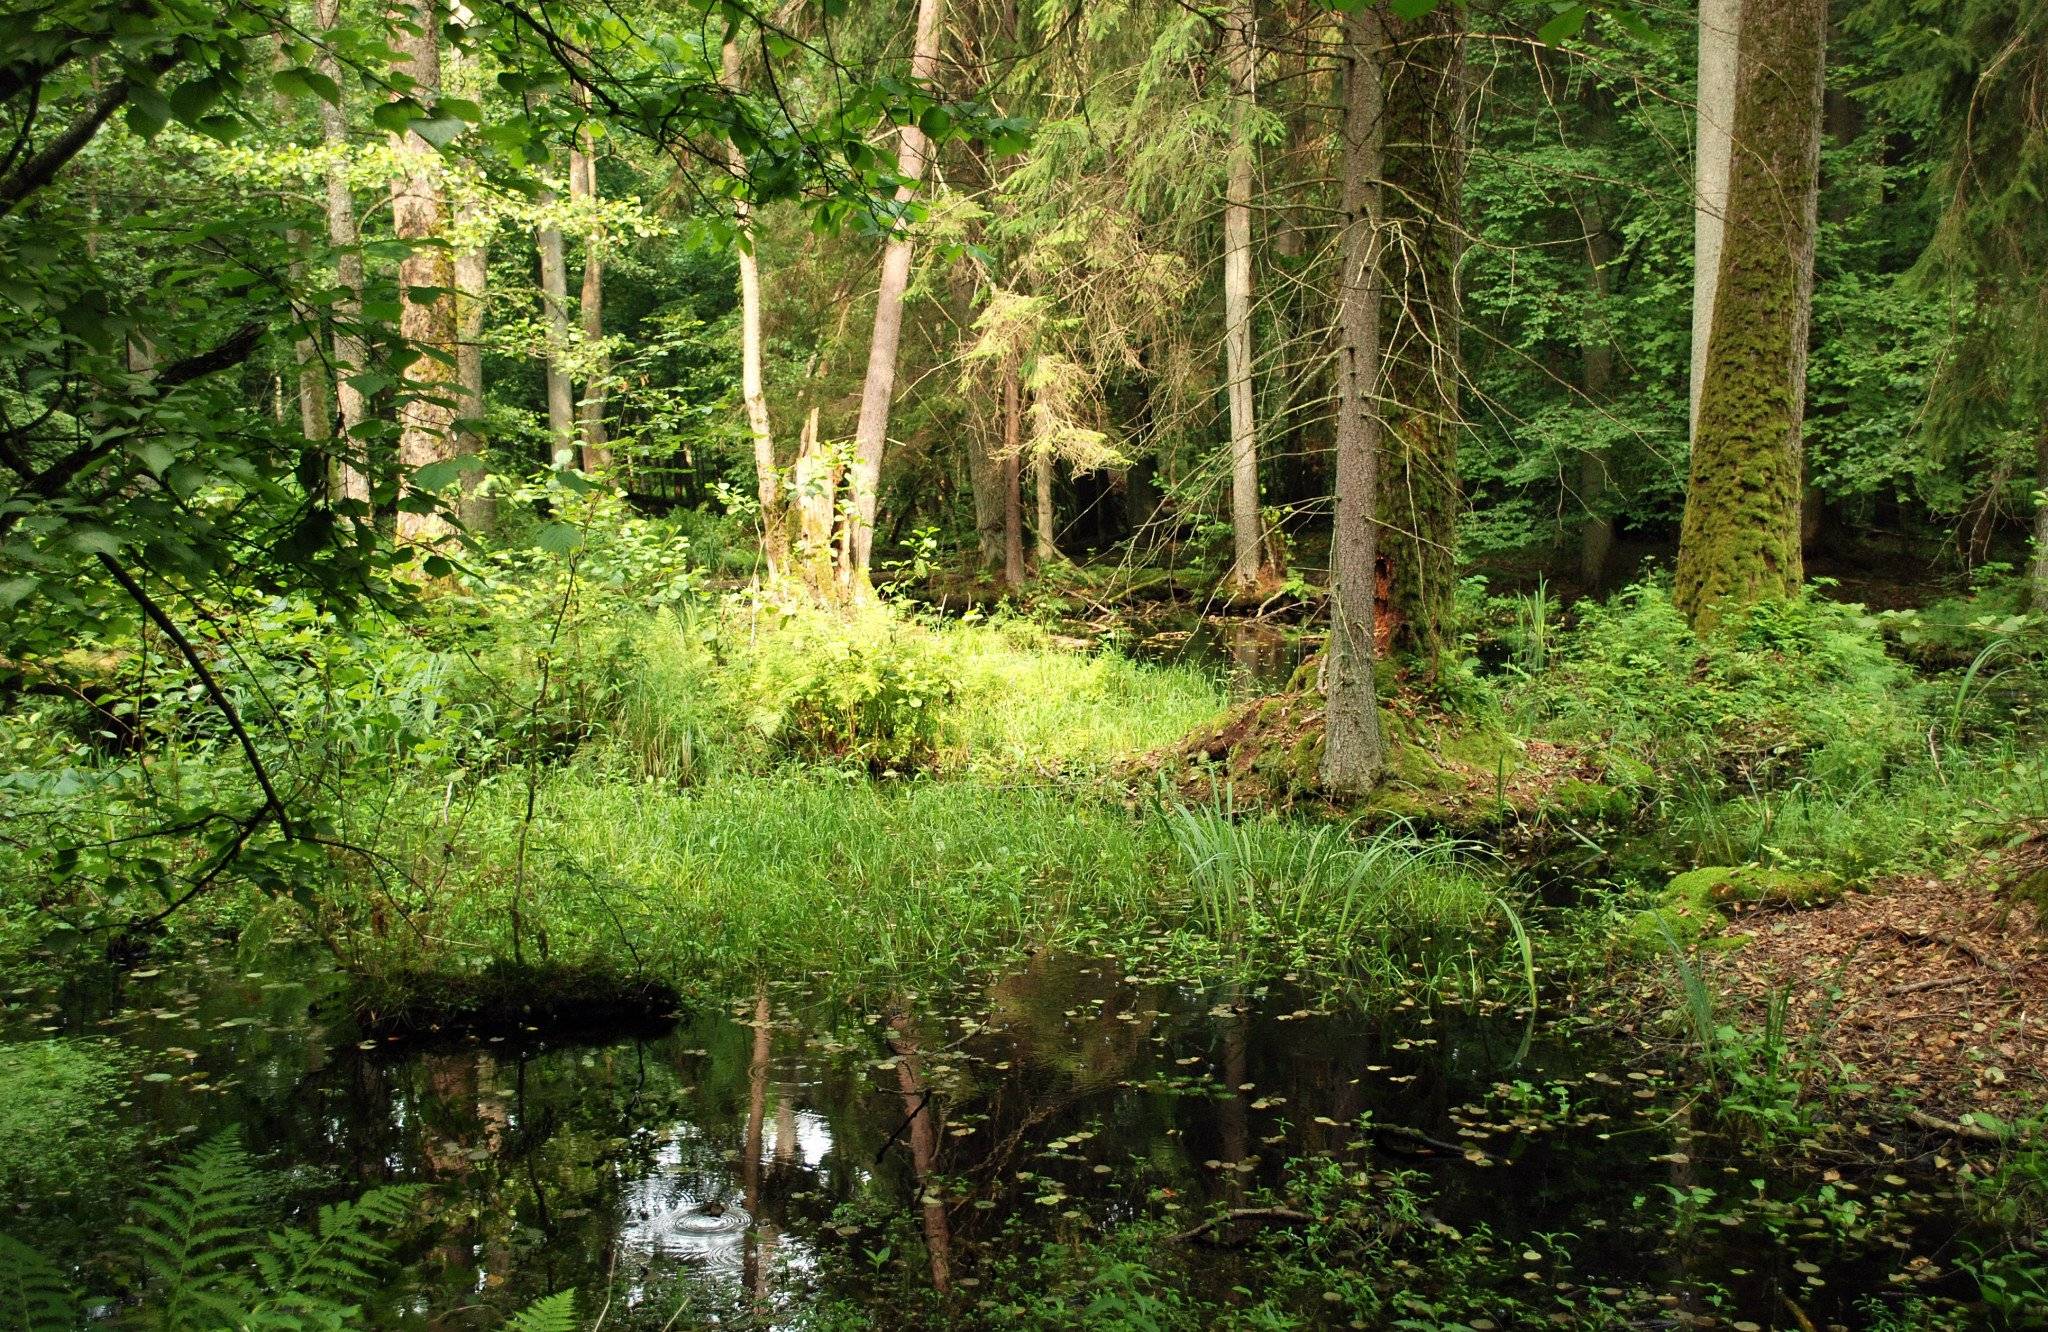 foto przedstawia fragment lasu puszczańskioego